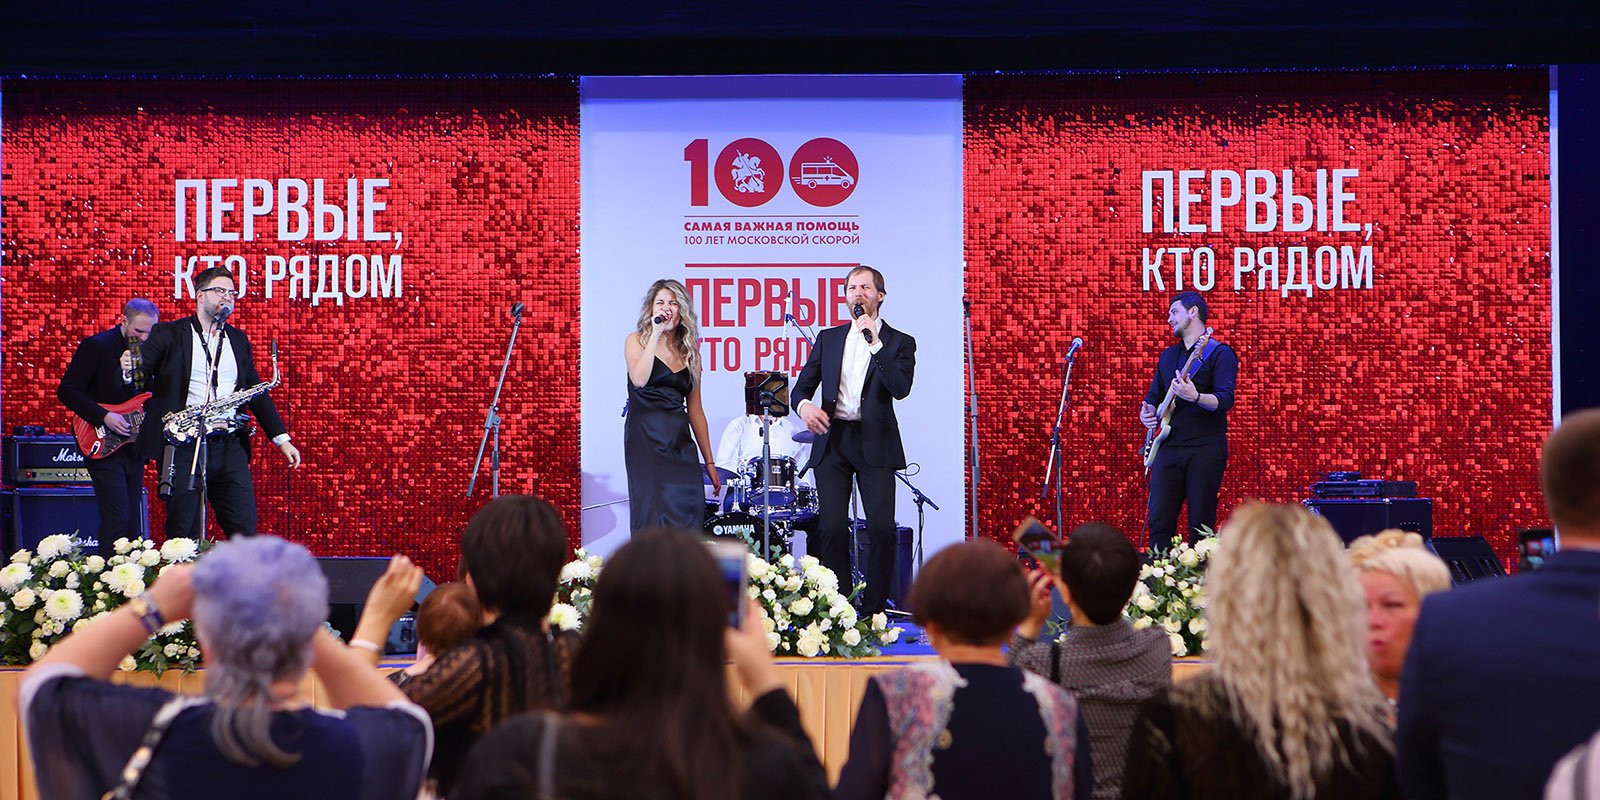 Посвященный столетию станции скорой помощи концерт прошел в Кремлевском дворце